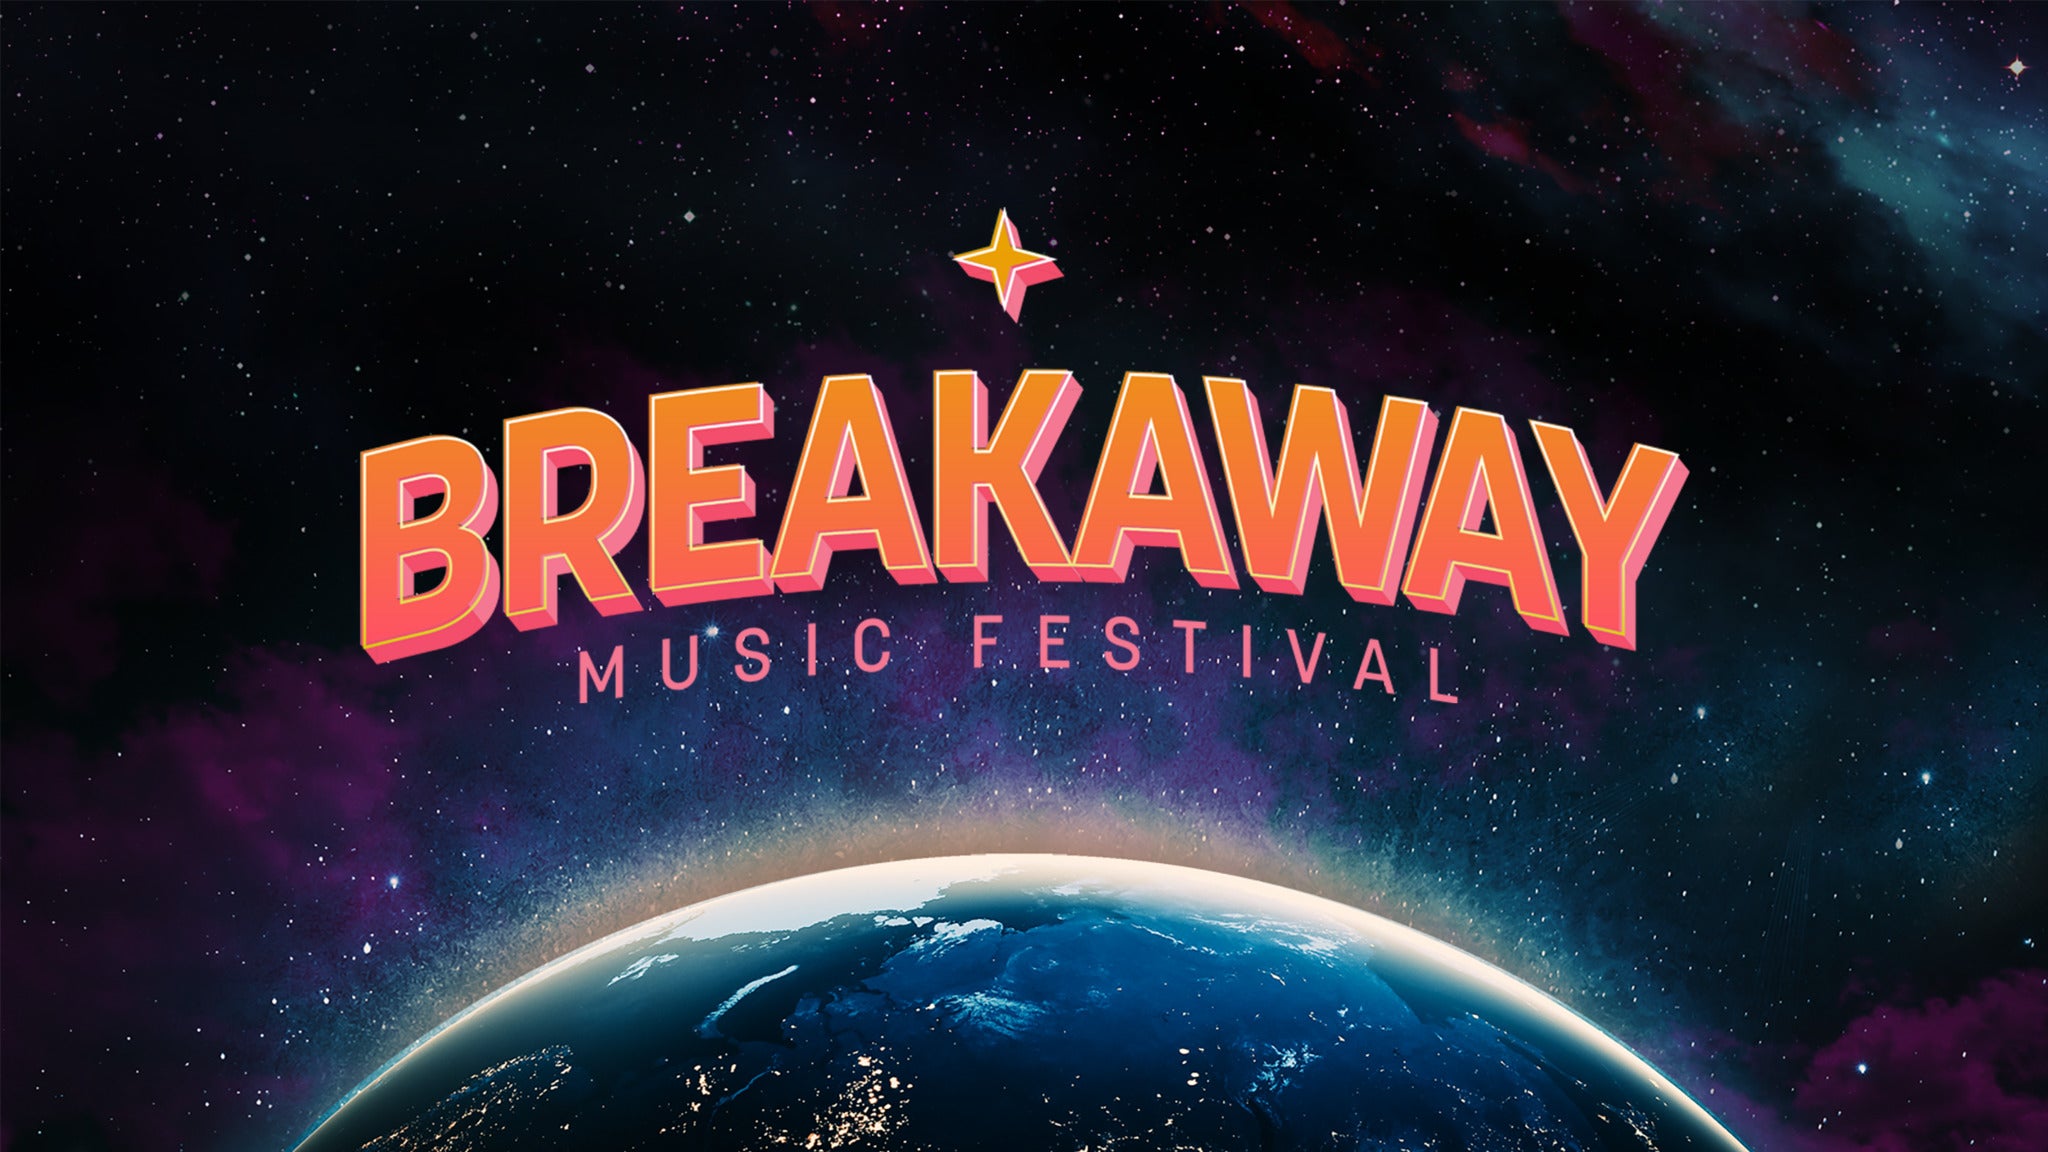 Breakaway Music Festival - Nashville presale information on freepresalepasswords.com